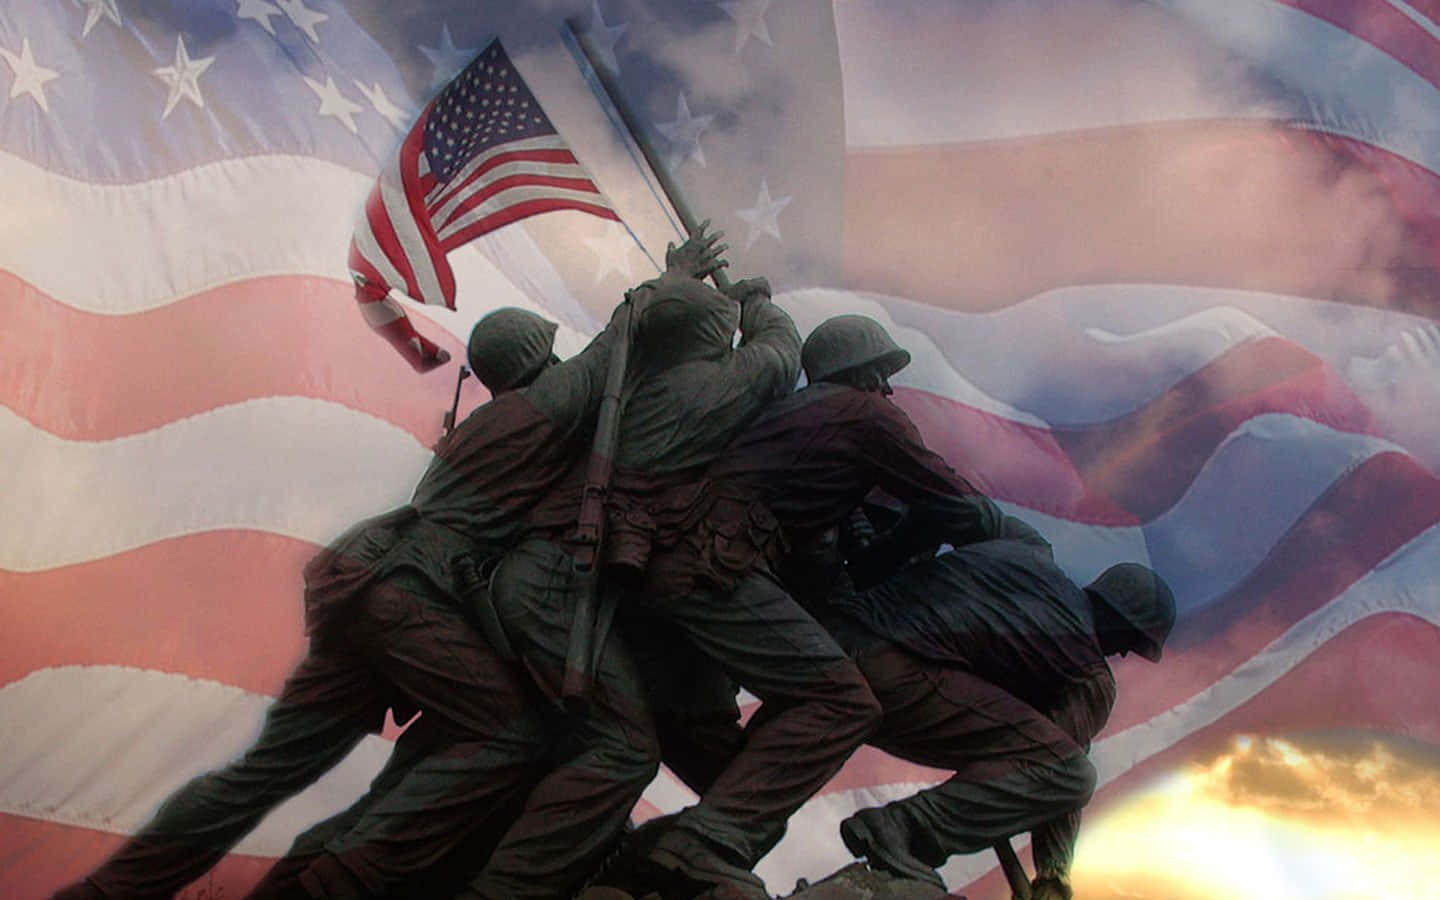 Dieus-amerikanische Armee Zeigt Stärke Und Solidarität. Wallpaper